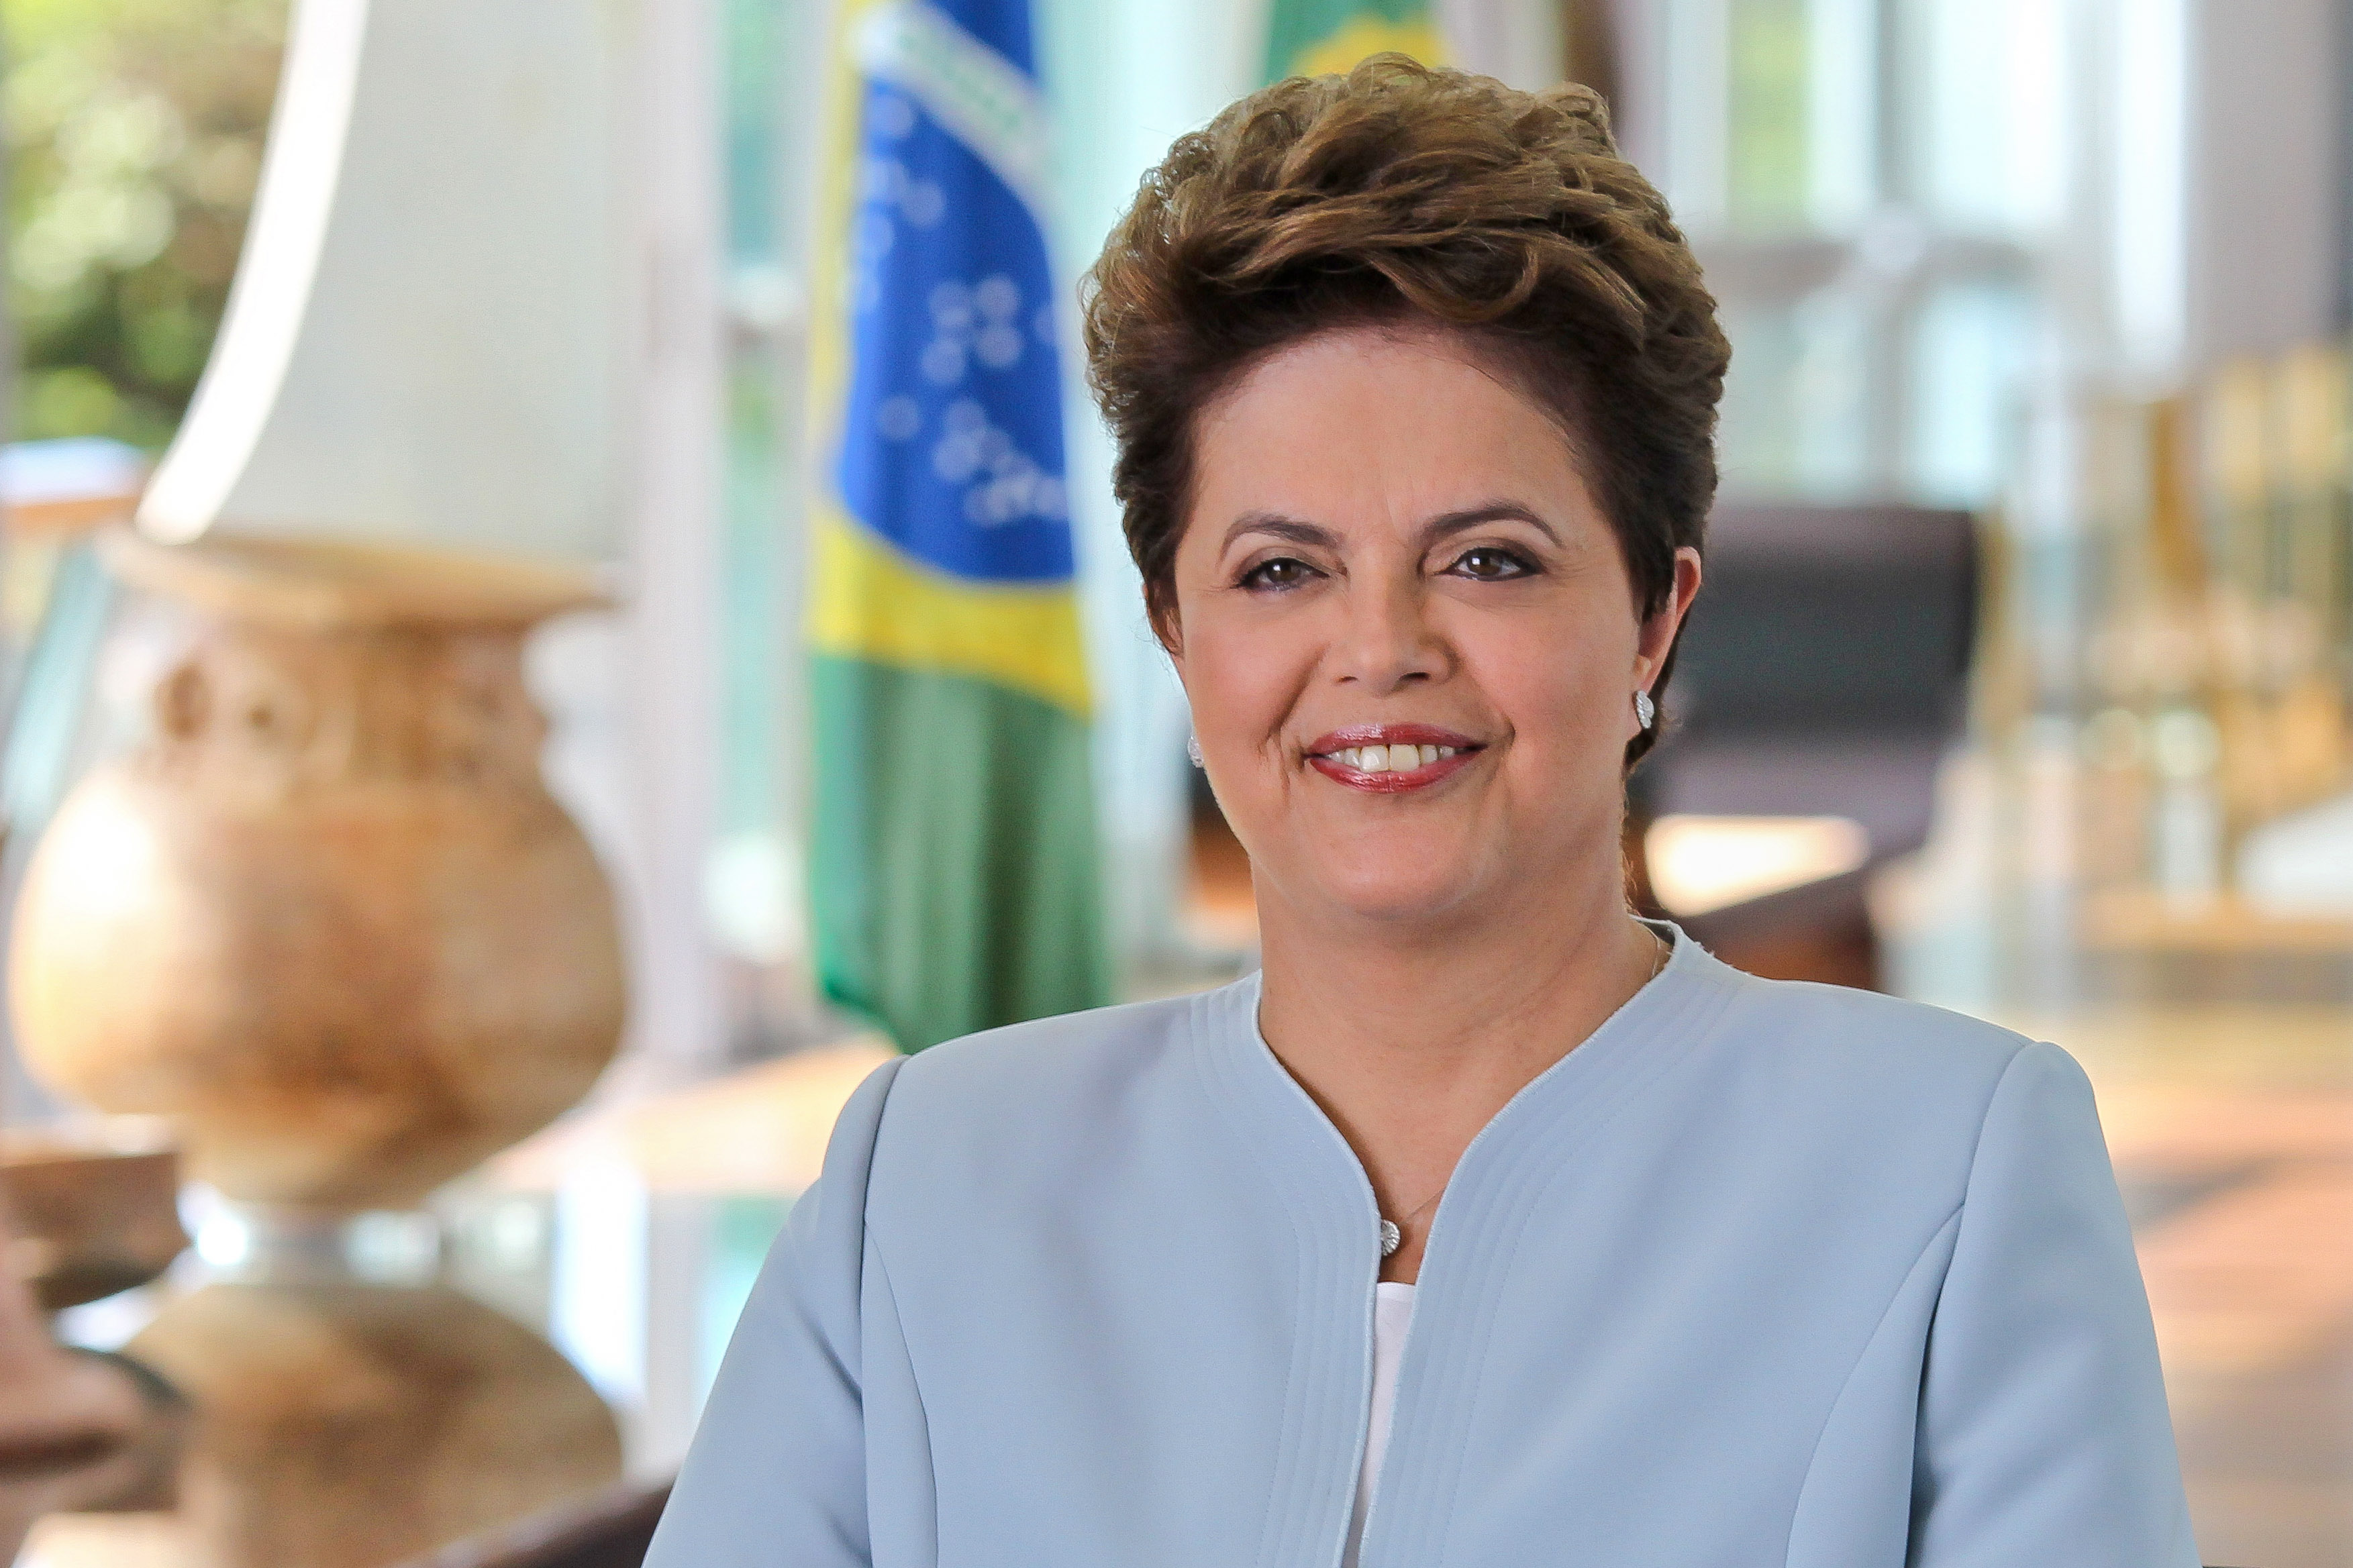 Reitor participa de evento com presidenta Dilma Rousseff